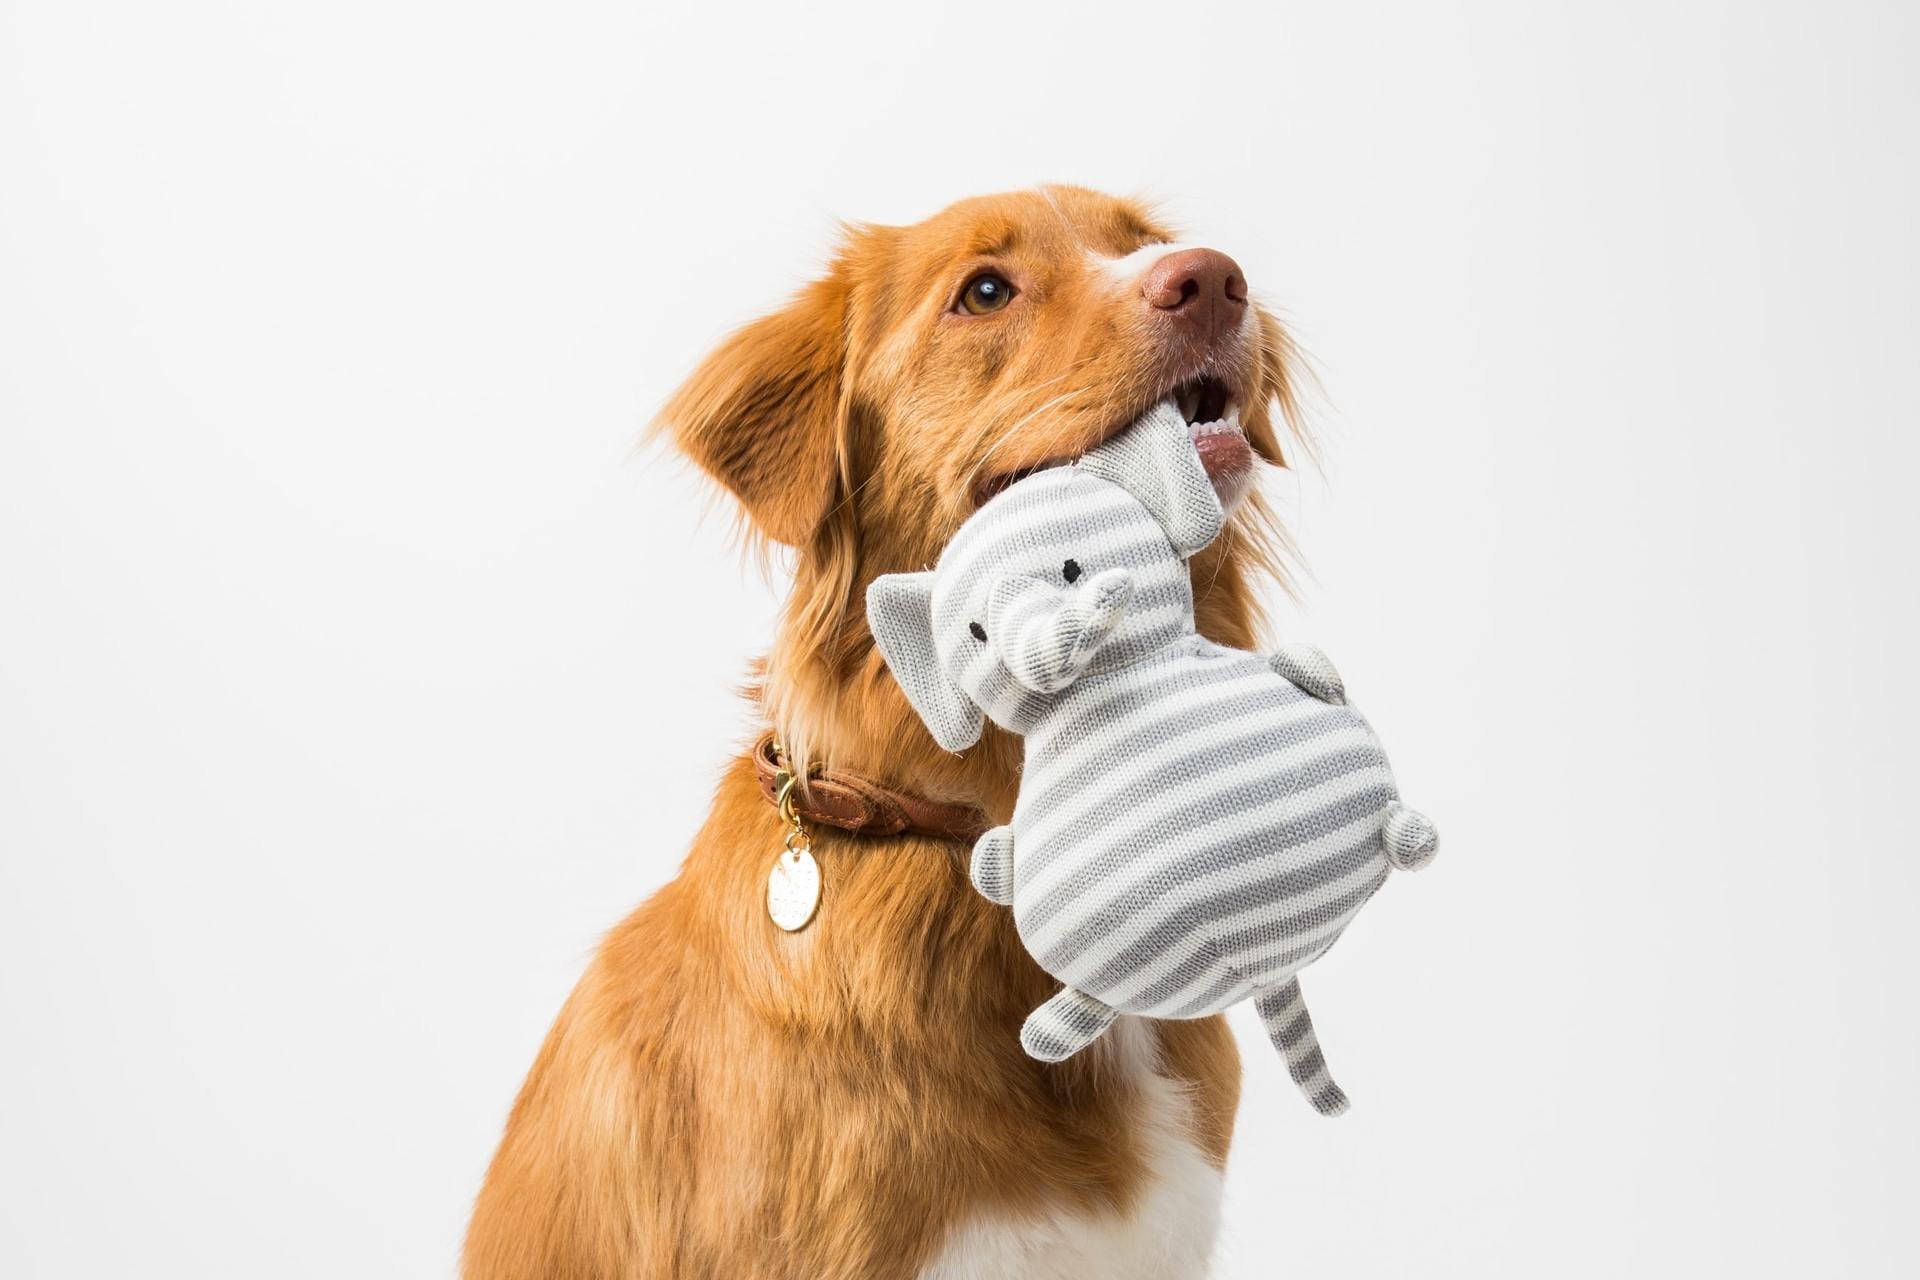 O cãozinho da foto está com um brinquedo cinza e branco — mas se fosse amarelo ou azul, ele também ia distinguir (Fonte: Unsplash)